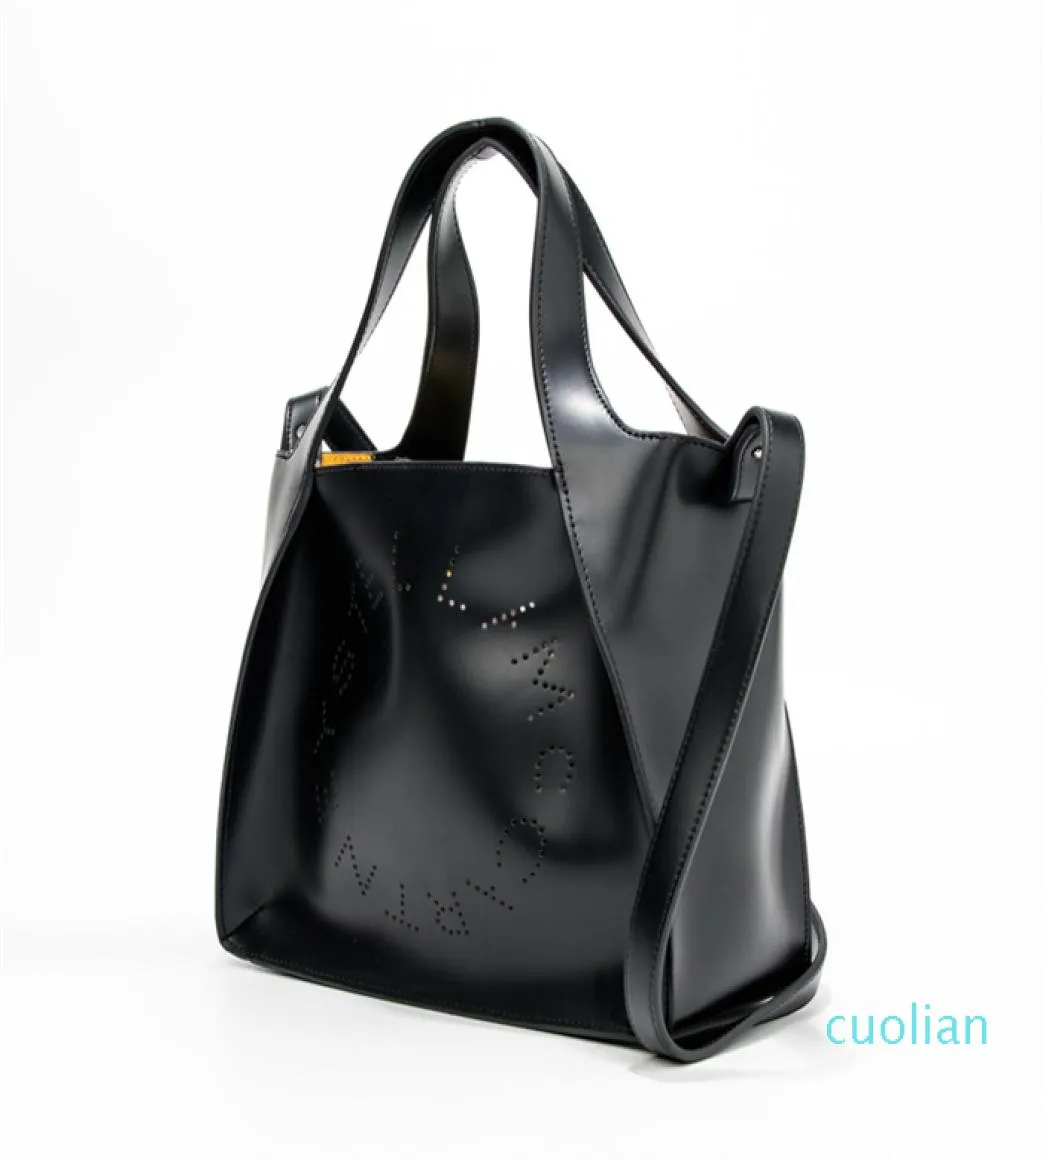 Stella McCartney Women Fashion Handbag Sac moyen et petit PVC Leather Lady Shopping Sac avec Purse3138869127